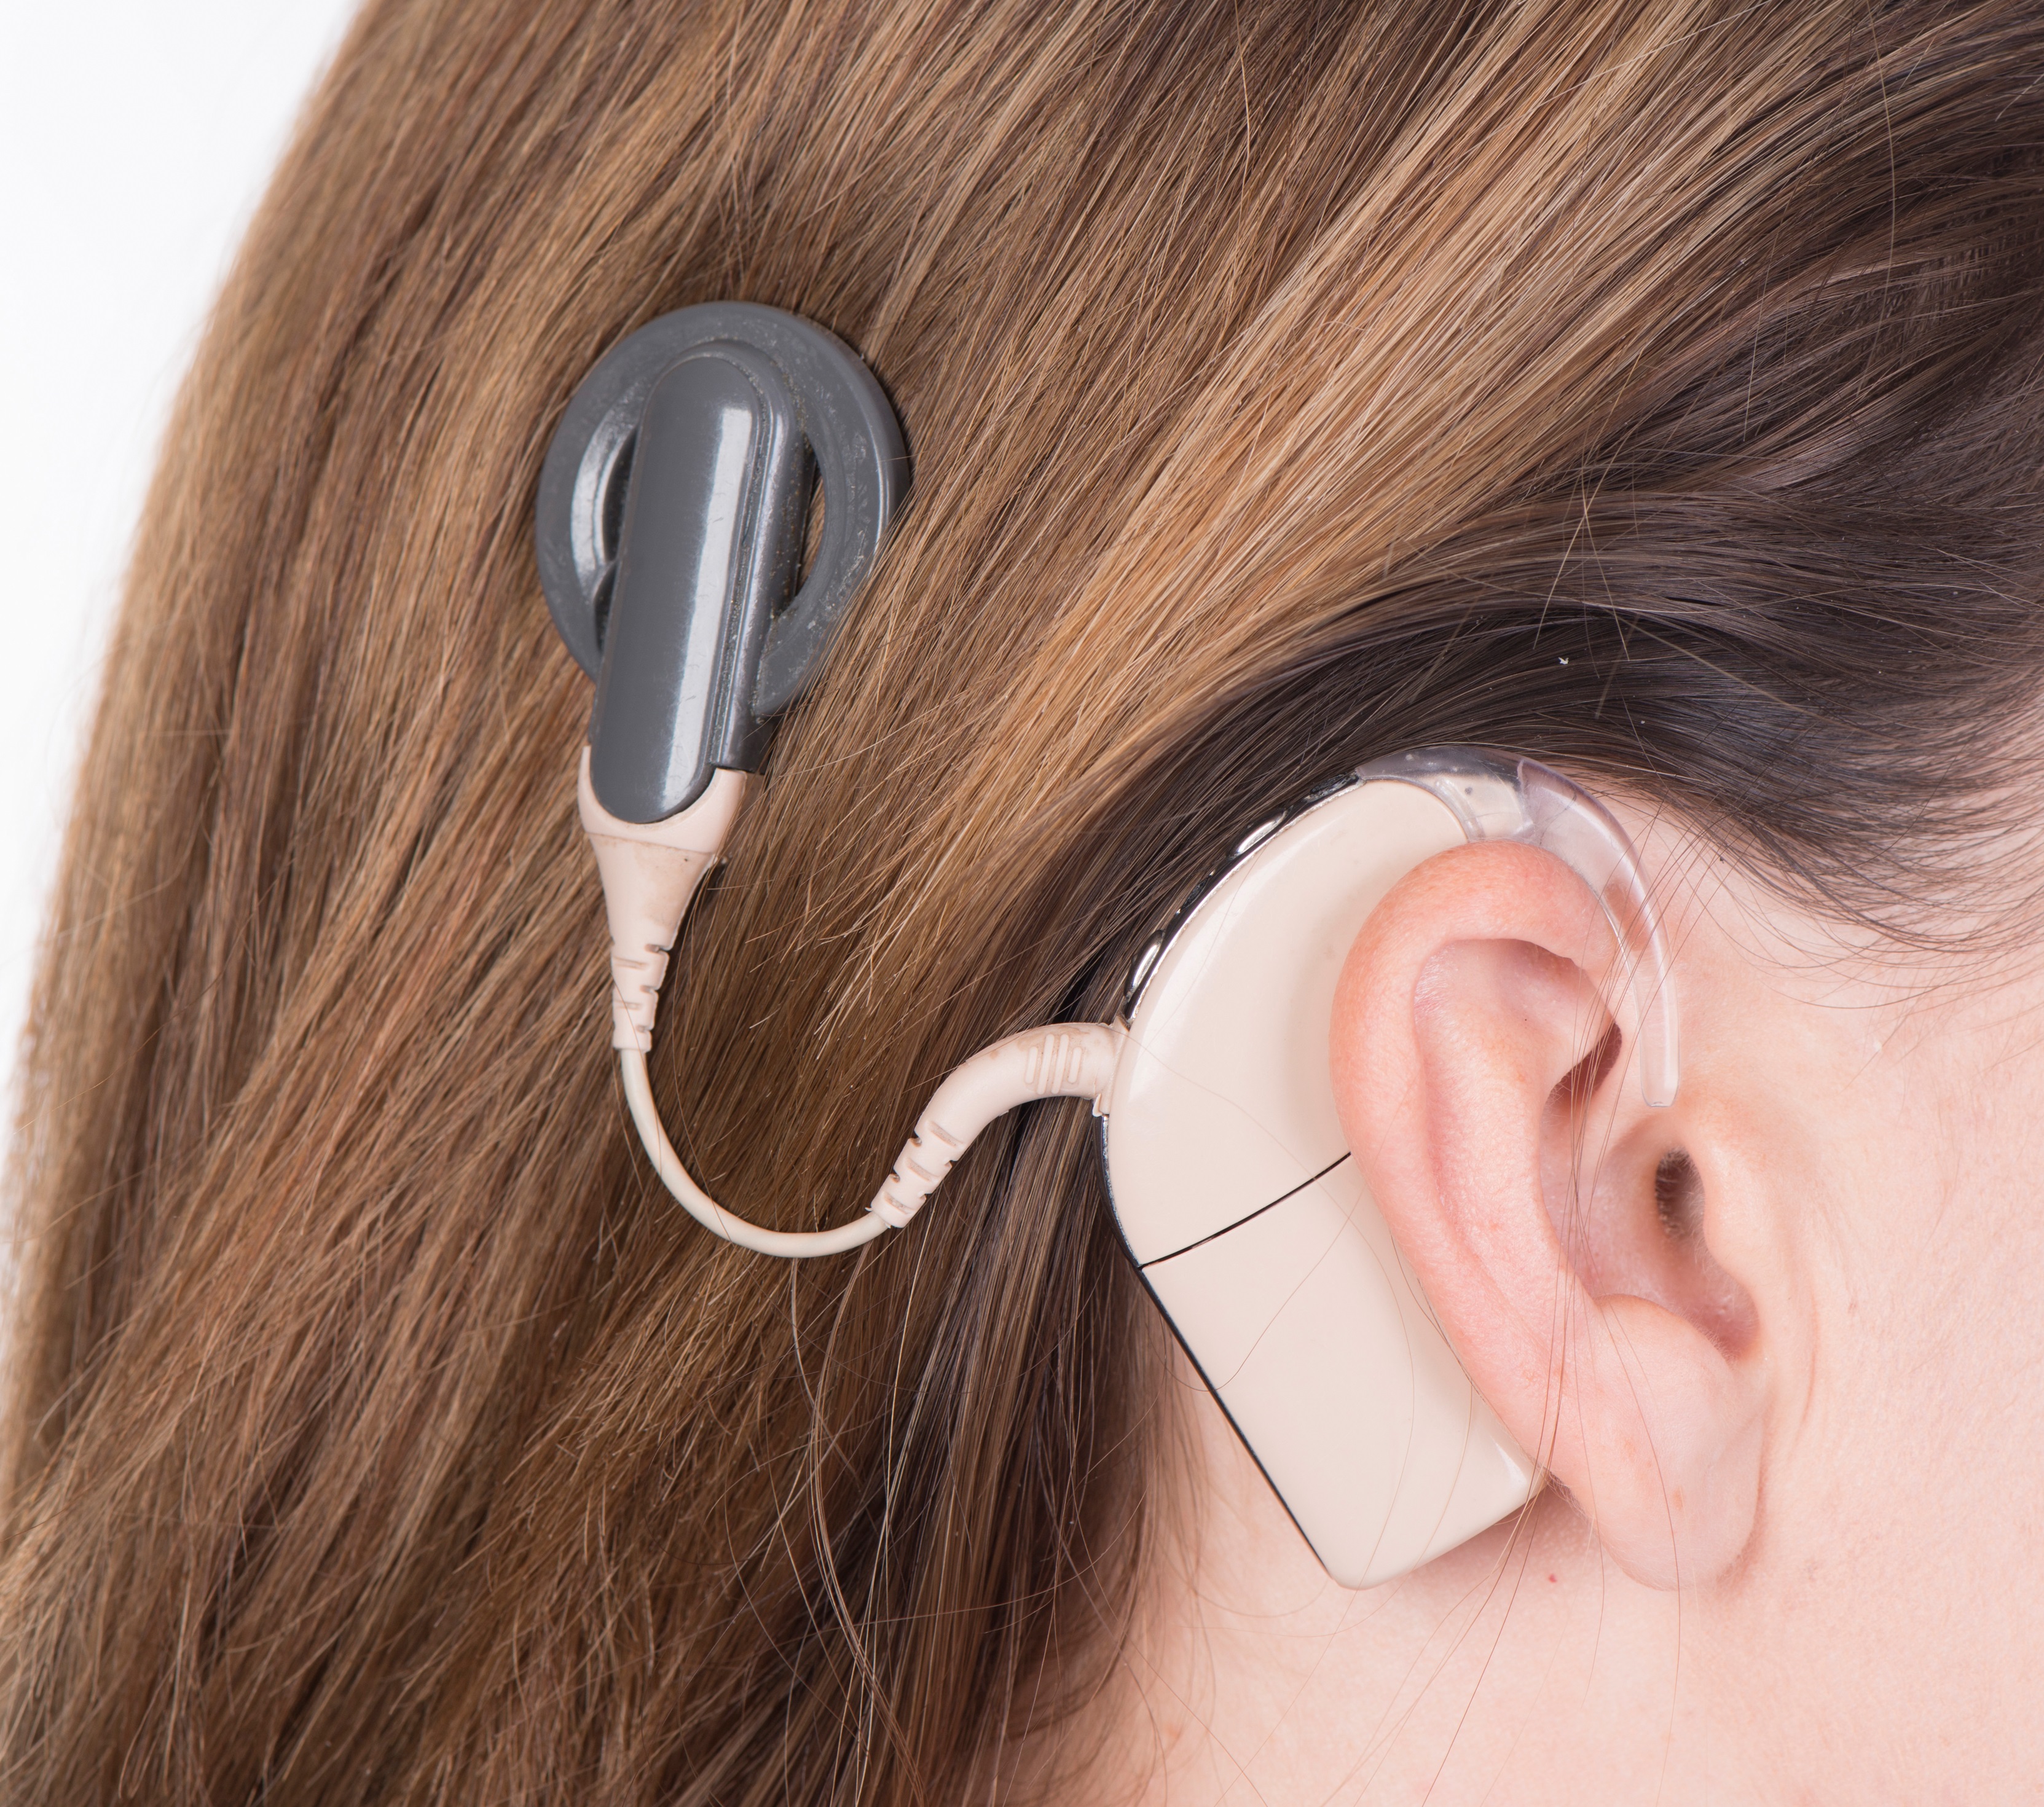 Hearing video. Аппарат Cochlear кохлеарный. Слуховой аппарат кохлеарный имплант. Кохлеарный имплант Кохлер. Аппарат для глухих кохлеарная имплантация.